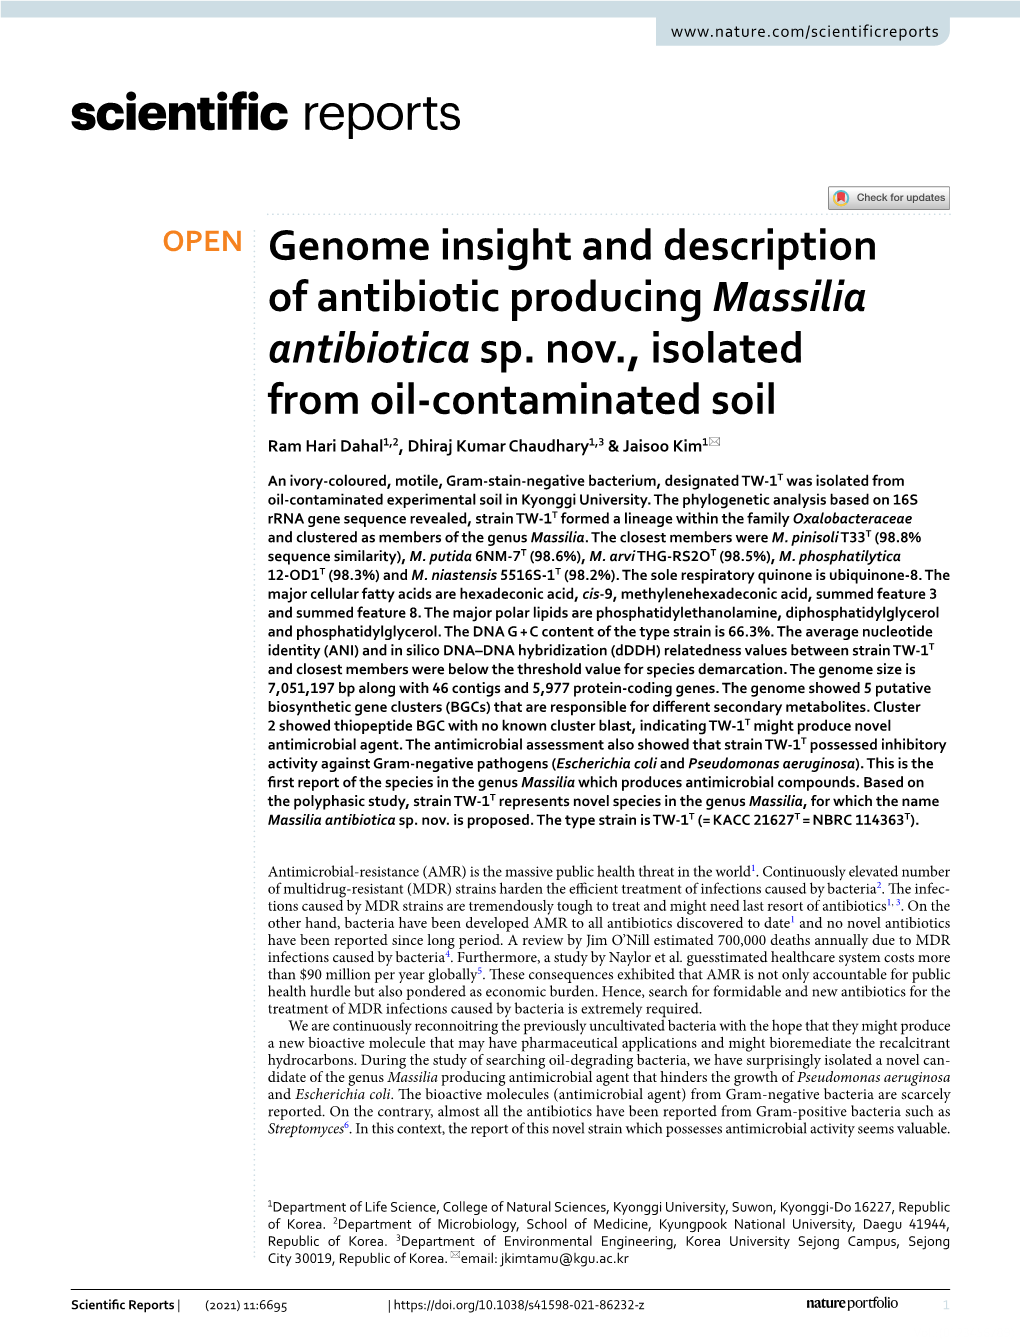 Genome Insight and Description of Antibiotic Producing Massilia Antibiotica Sp